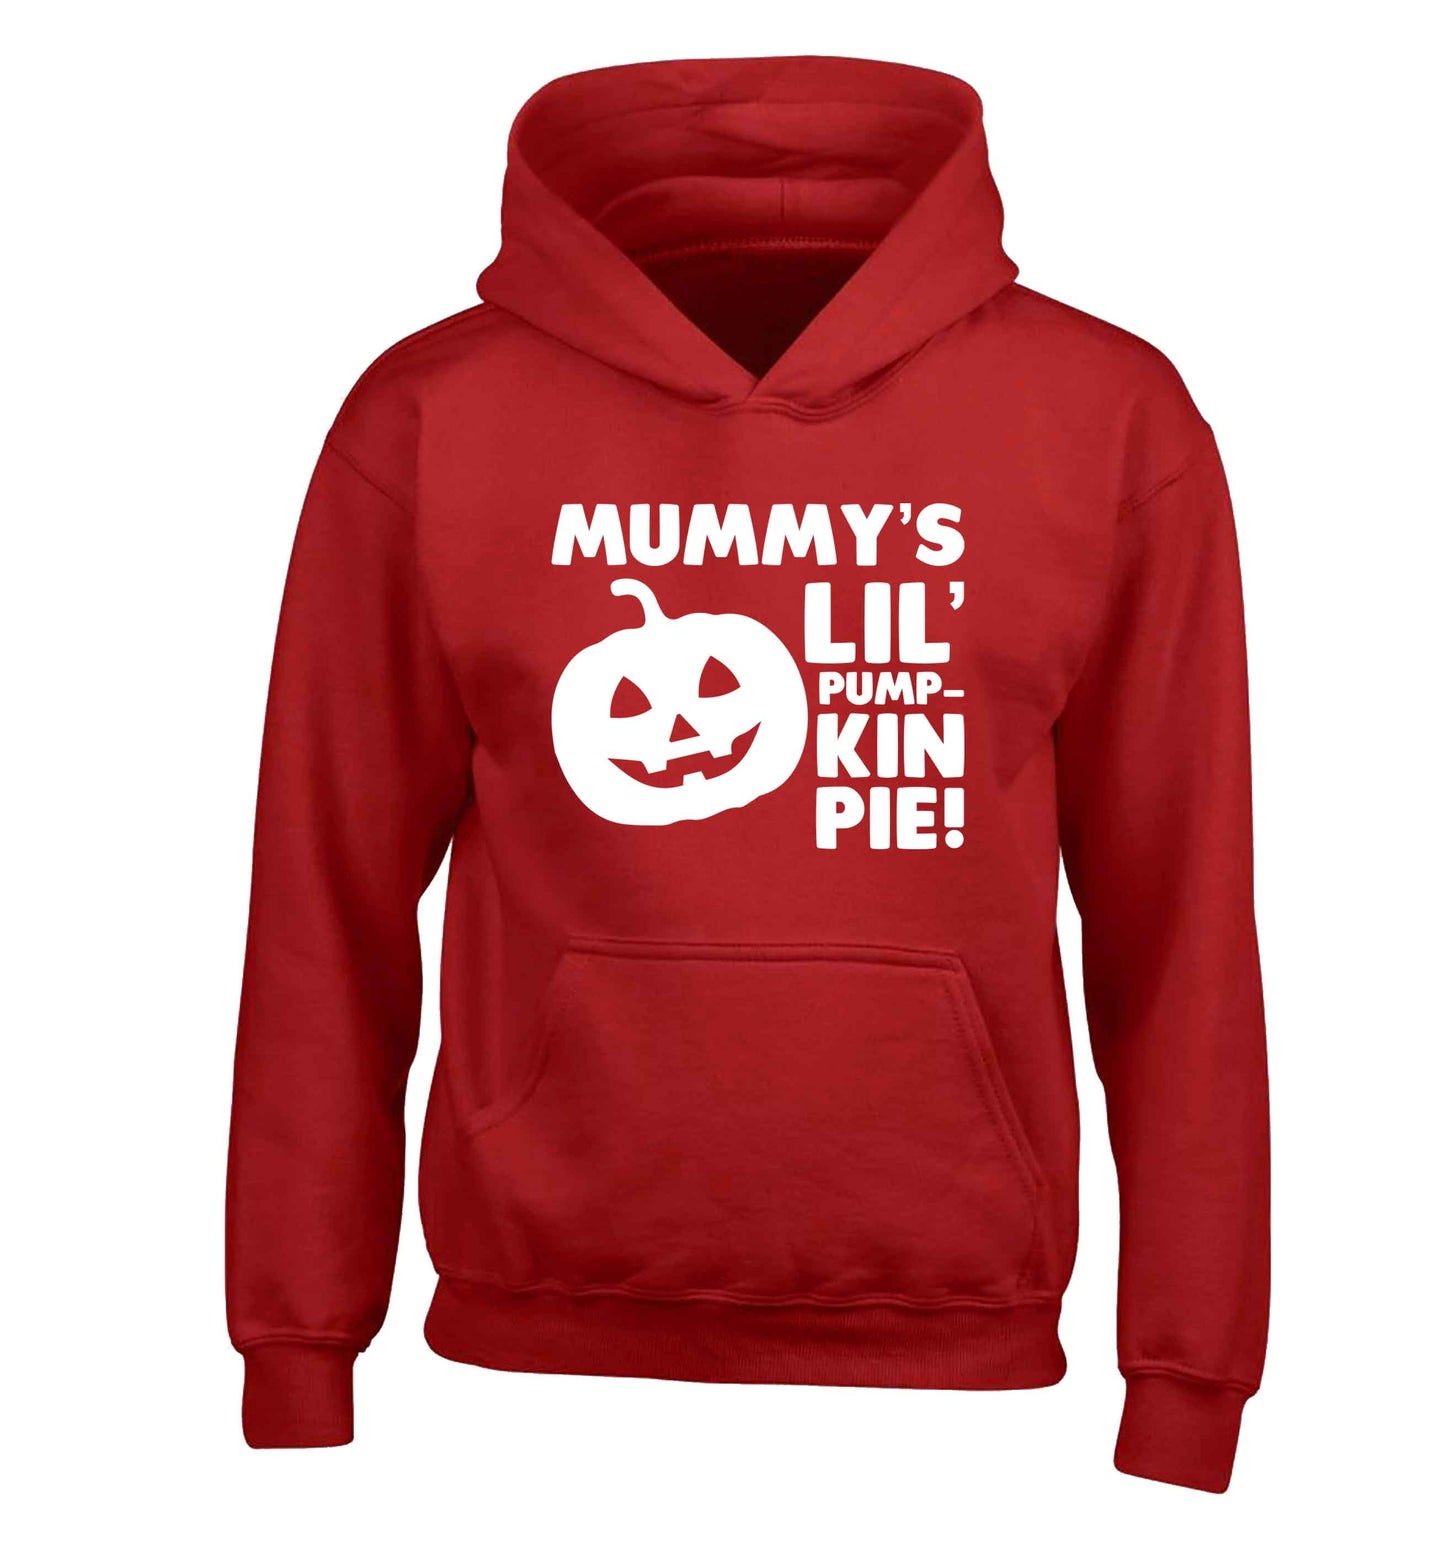 Mummy's lil' pumpkin pie children's red hoodie 12-13 Years